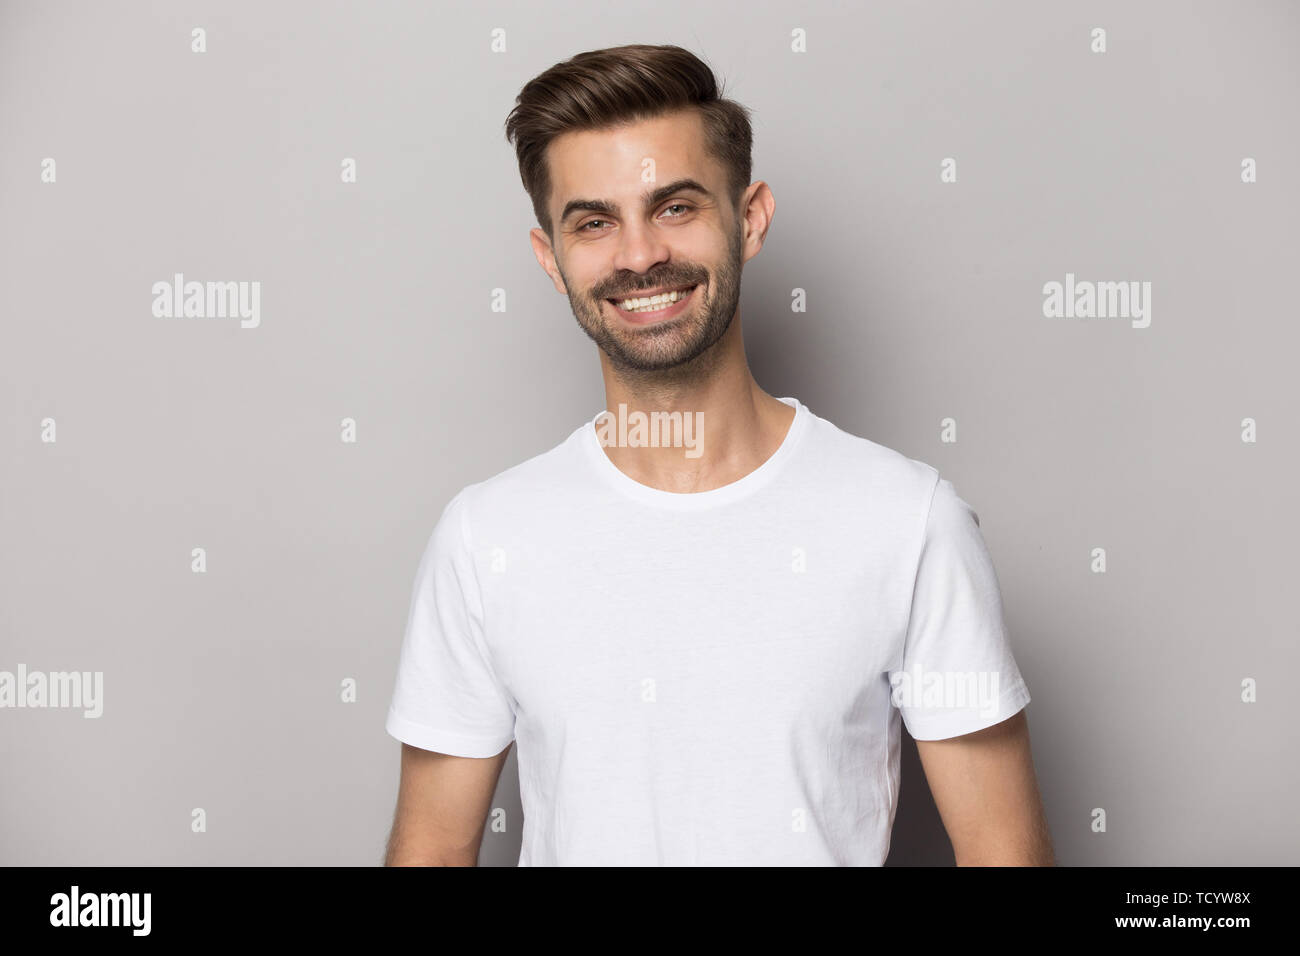 Positivo atractivo chico con blanco-nieve sonrisa mirando a la cámara Foto de stock